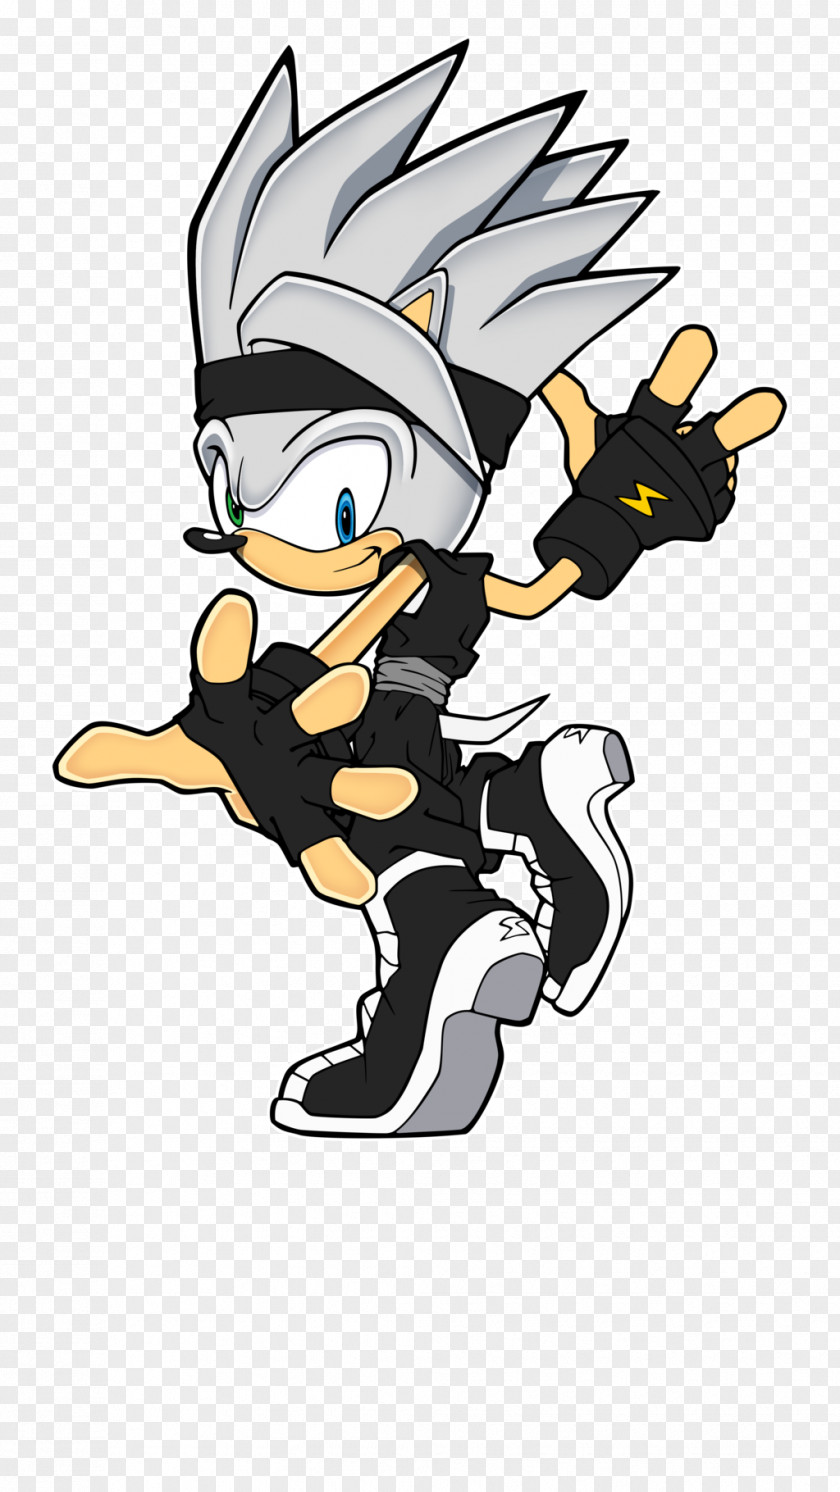 Sonic The Hedgehog Gohan Art Royal Rumble (2015) Character Saiyan PNG